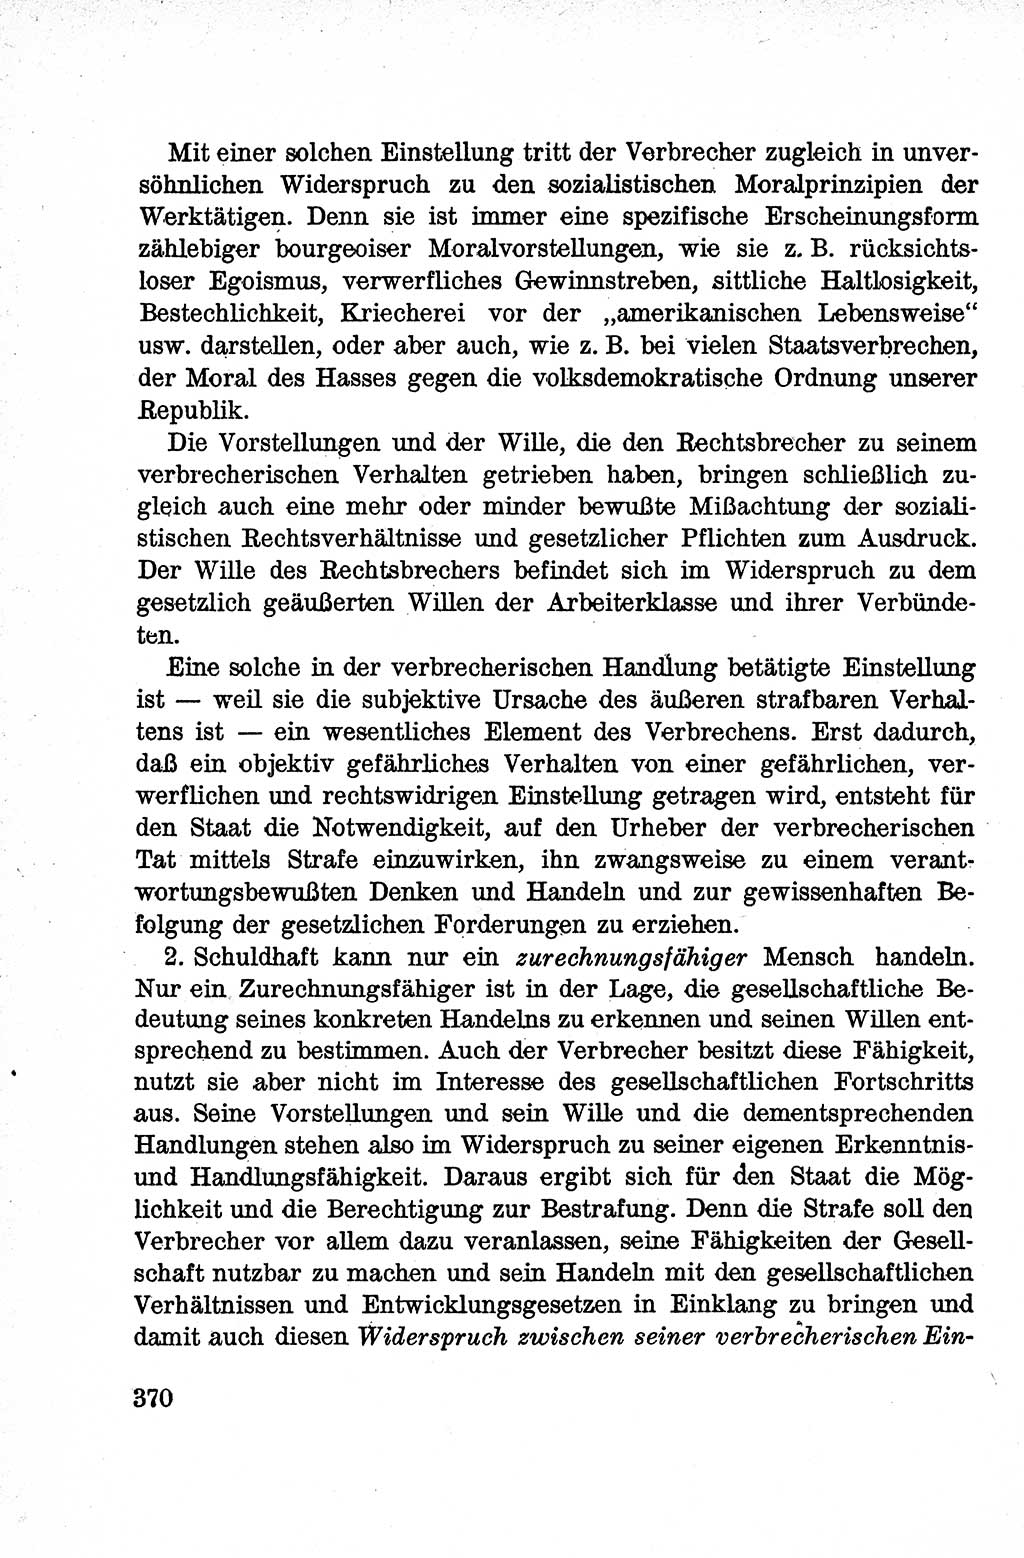 Lehrbuch des Strafrechts der Deutschen Demokratischen Republik (DDR), Allgemeiner Teil 1959, Seite 370 (Lb. Strafr. DDR AT 1959, S. 370)